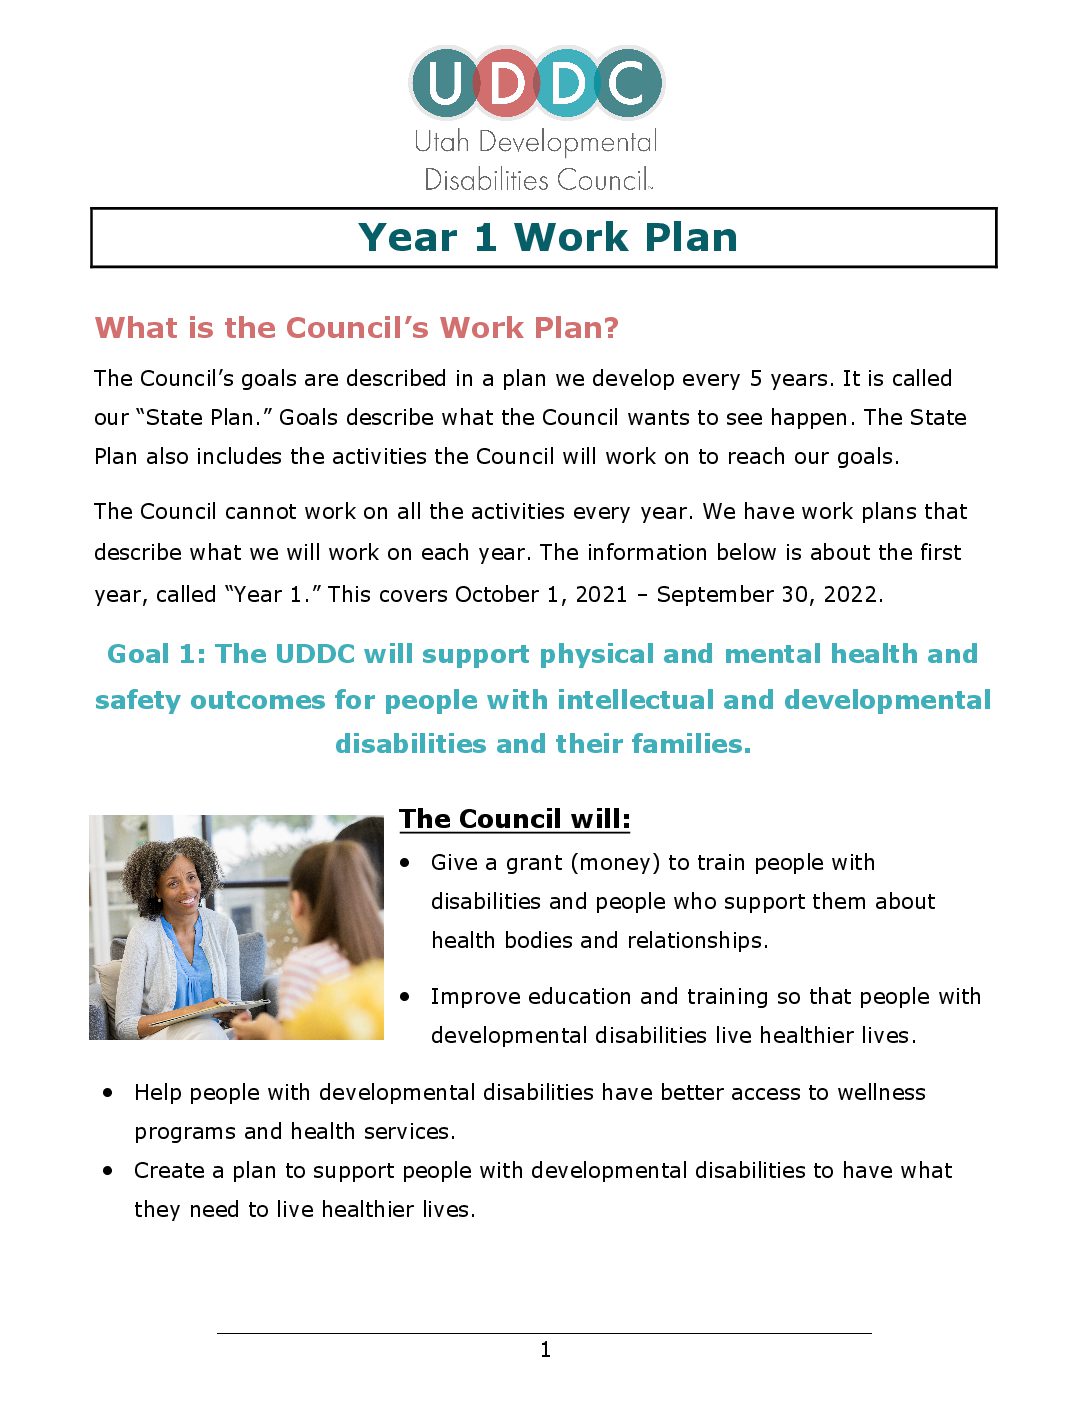 Year 1 Work Plan PDF